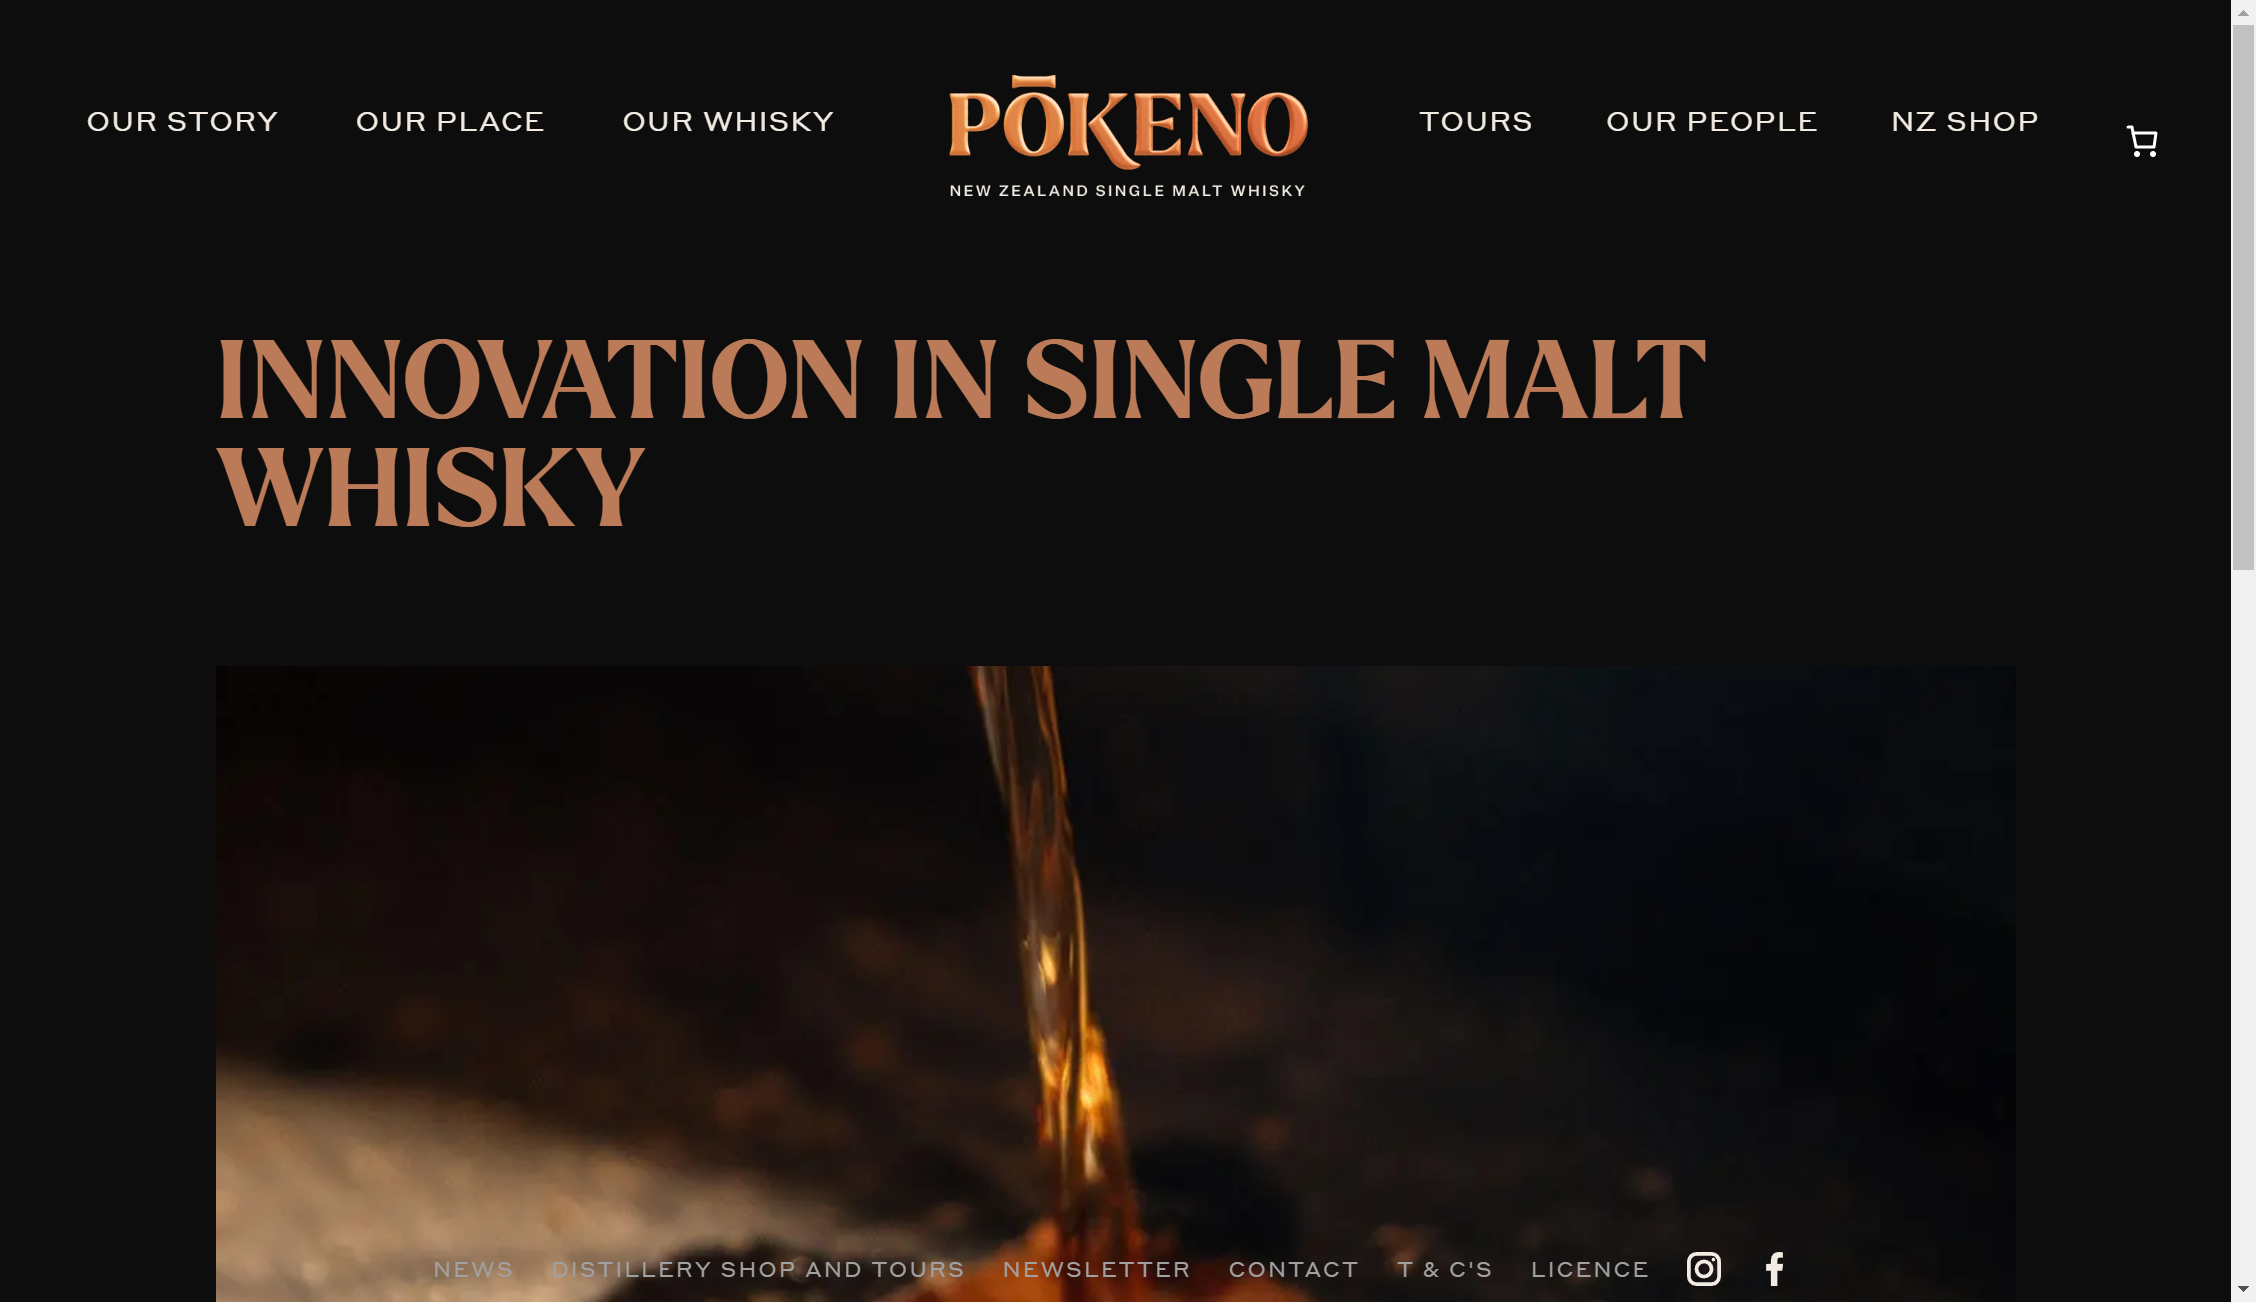 pokeno whisky innovation 1